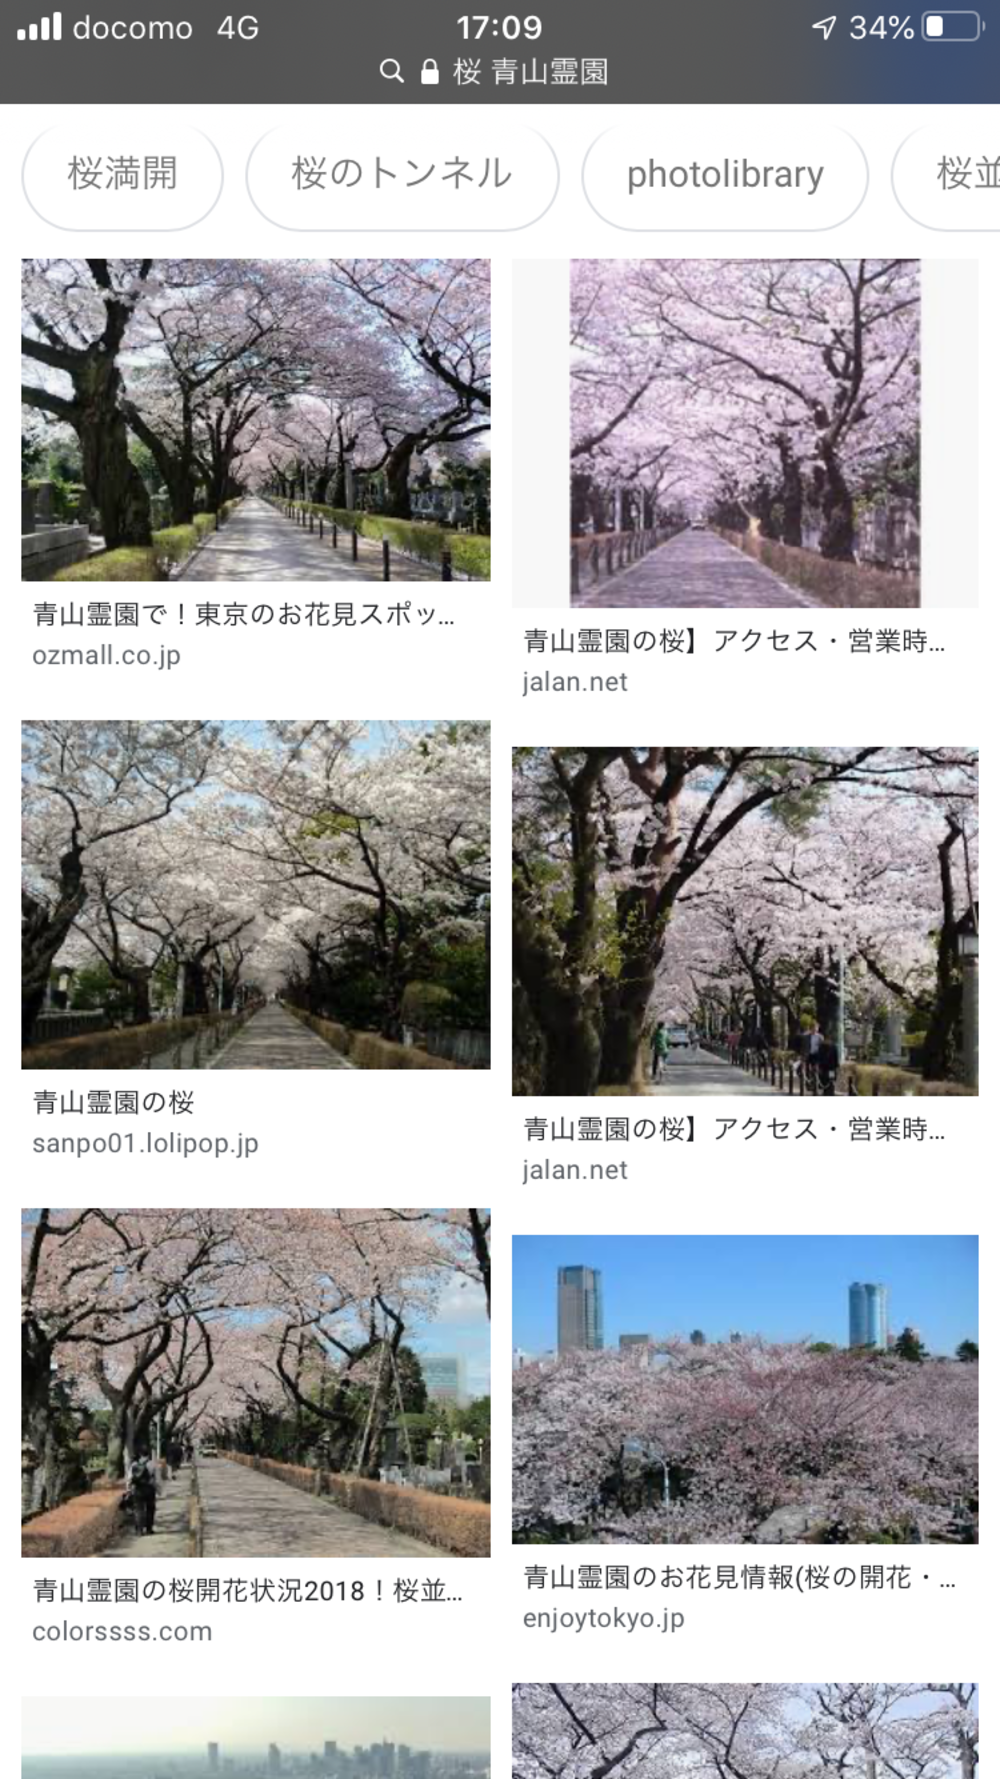 着物×桜 撮影会 被写体参加者募集